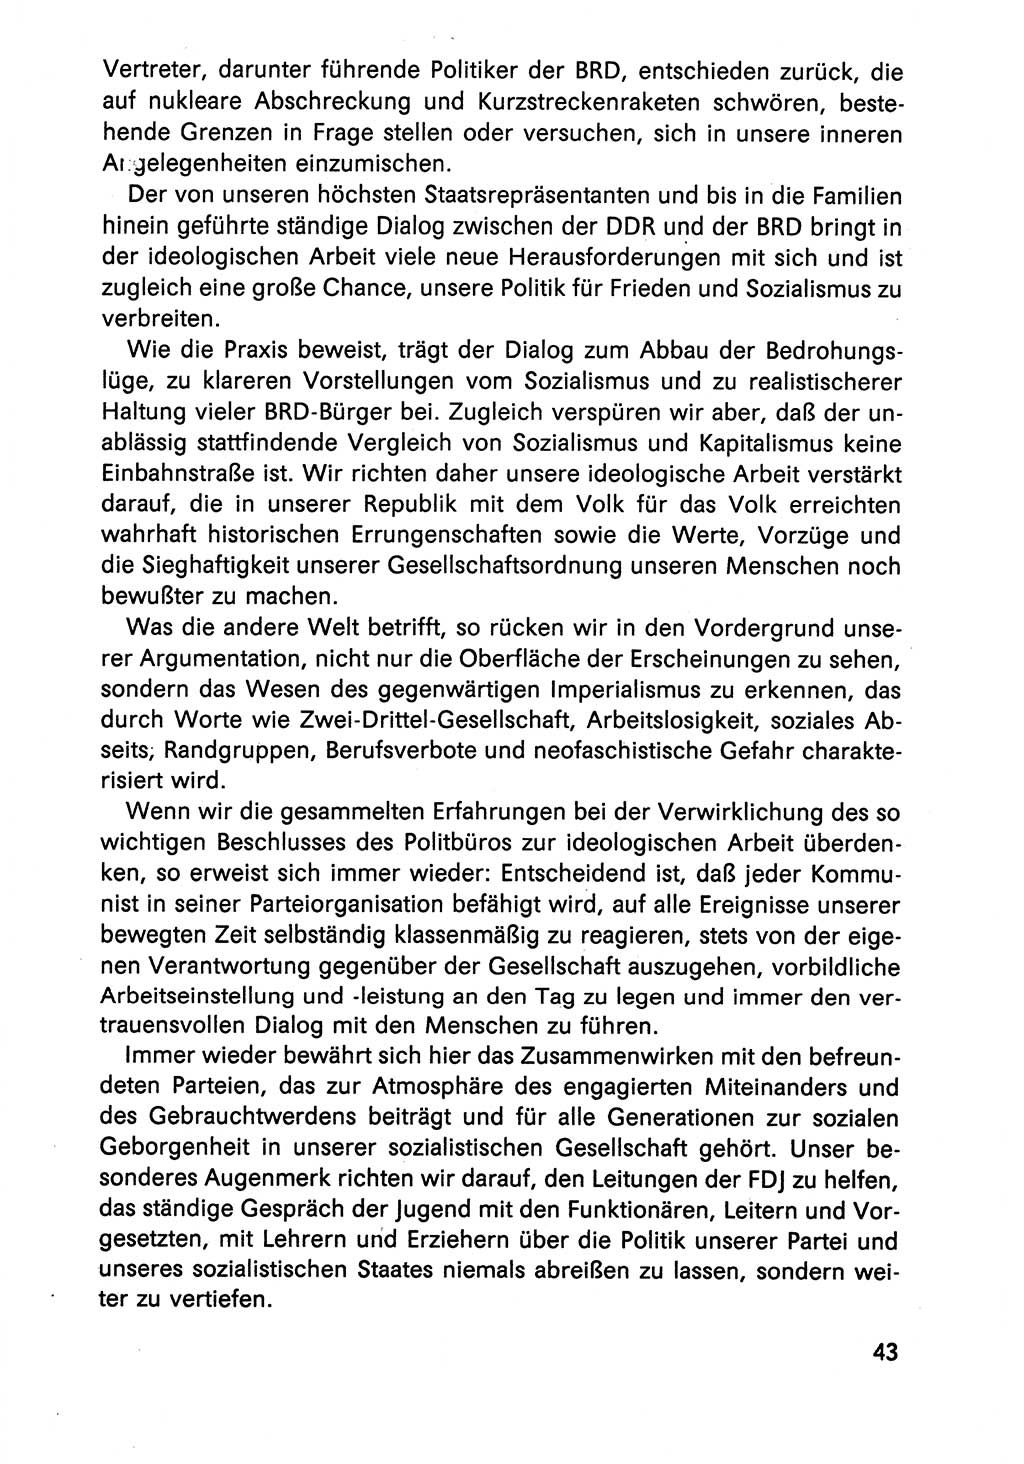 Diskussionsreden, 8. Tagung des ZK (Zentralkomitee) der SED (Sozialistische Einheitspartei Deutschlands) [Deutsche Demokratische Republik (DDR)] 1989, Seite 43 (Disk.-Red. 8. Tg. ZK SED DDR 1989, S. 43)